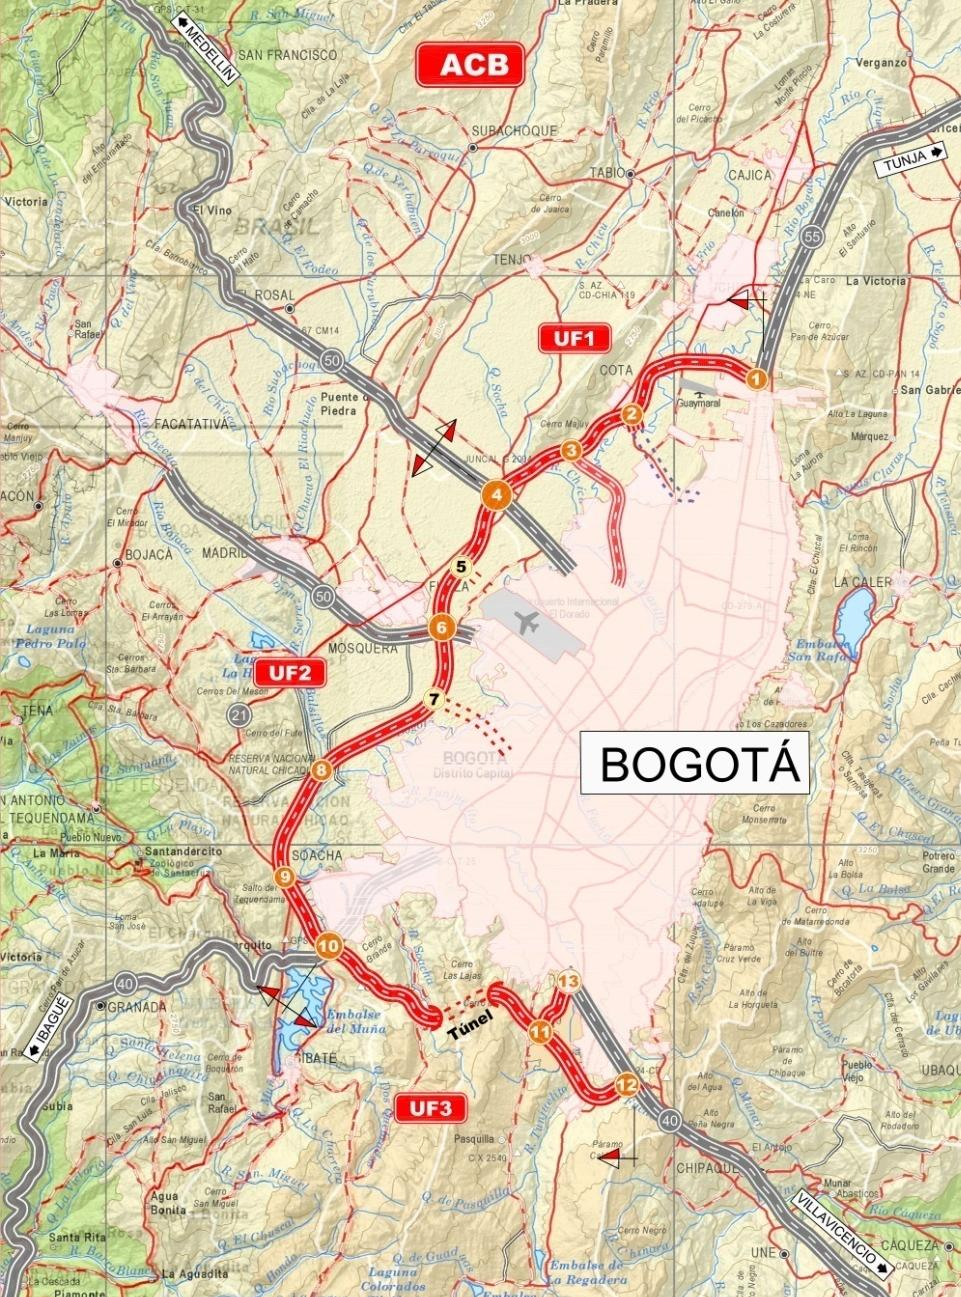 13 Circunvalar de Bogotá Longitud proyecto: 67 km Intervenciones: Construcción 67 km vía nueva en doble calzada de tres carriles Construcción túnel de 2.